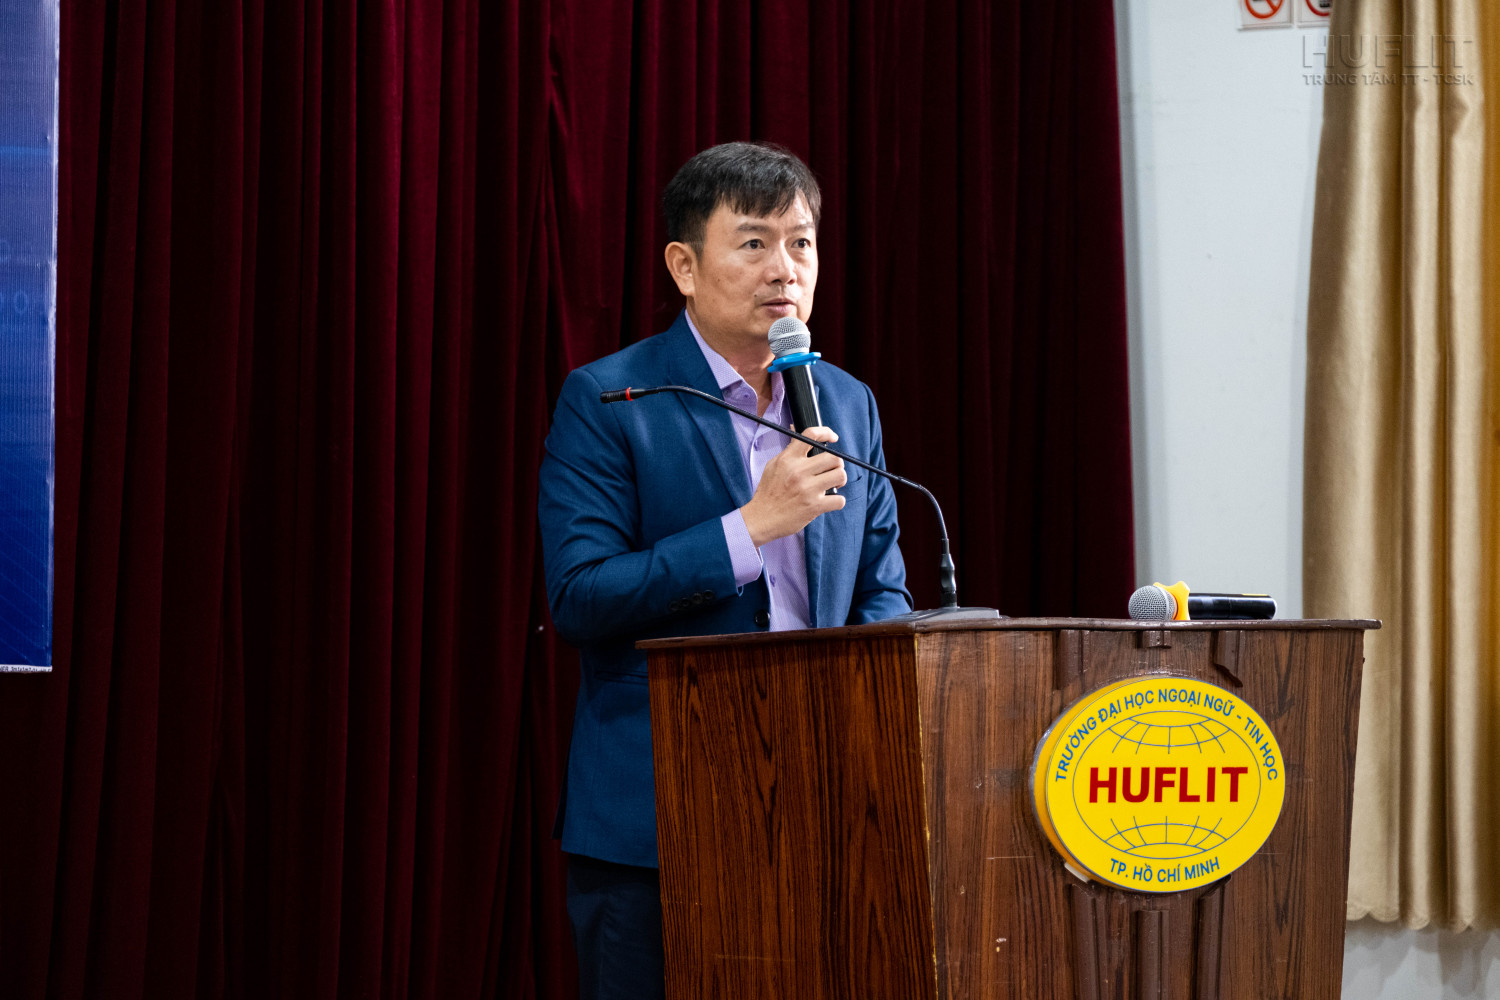 TS Nguyễn Anh Tuấn, Hiệu trưởng Trường Đại học Ngoại ngữ Tin học Thành phố Hồ Chí Minh (HUFLIT) phát biểu